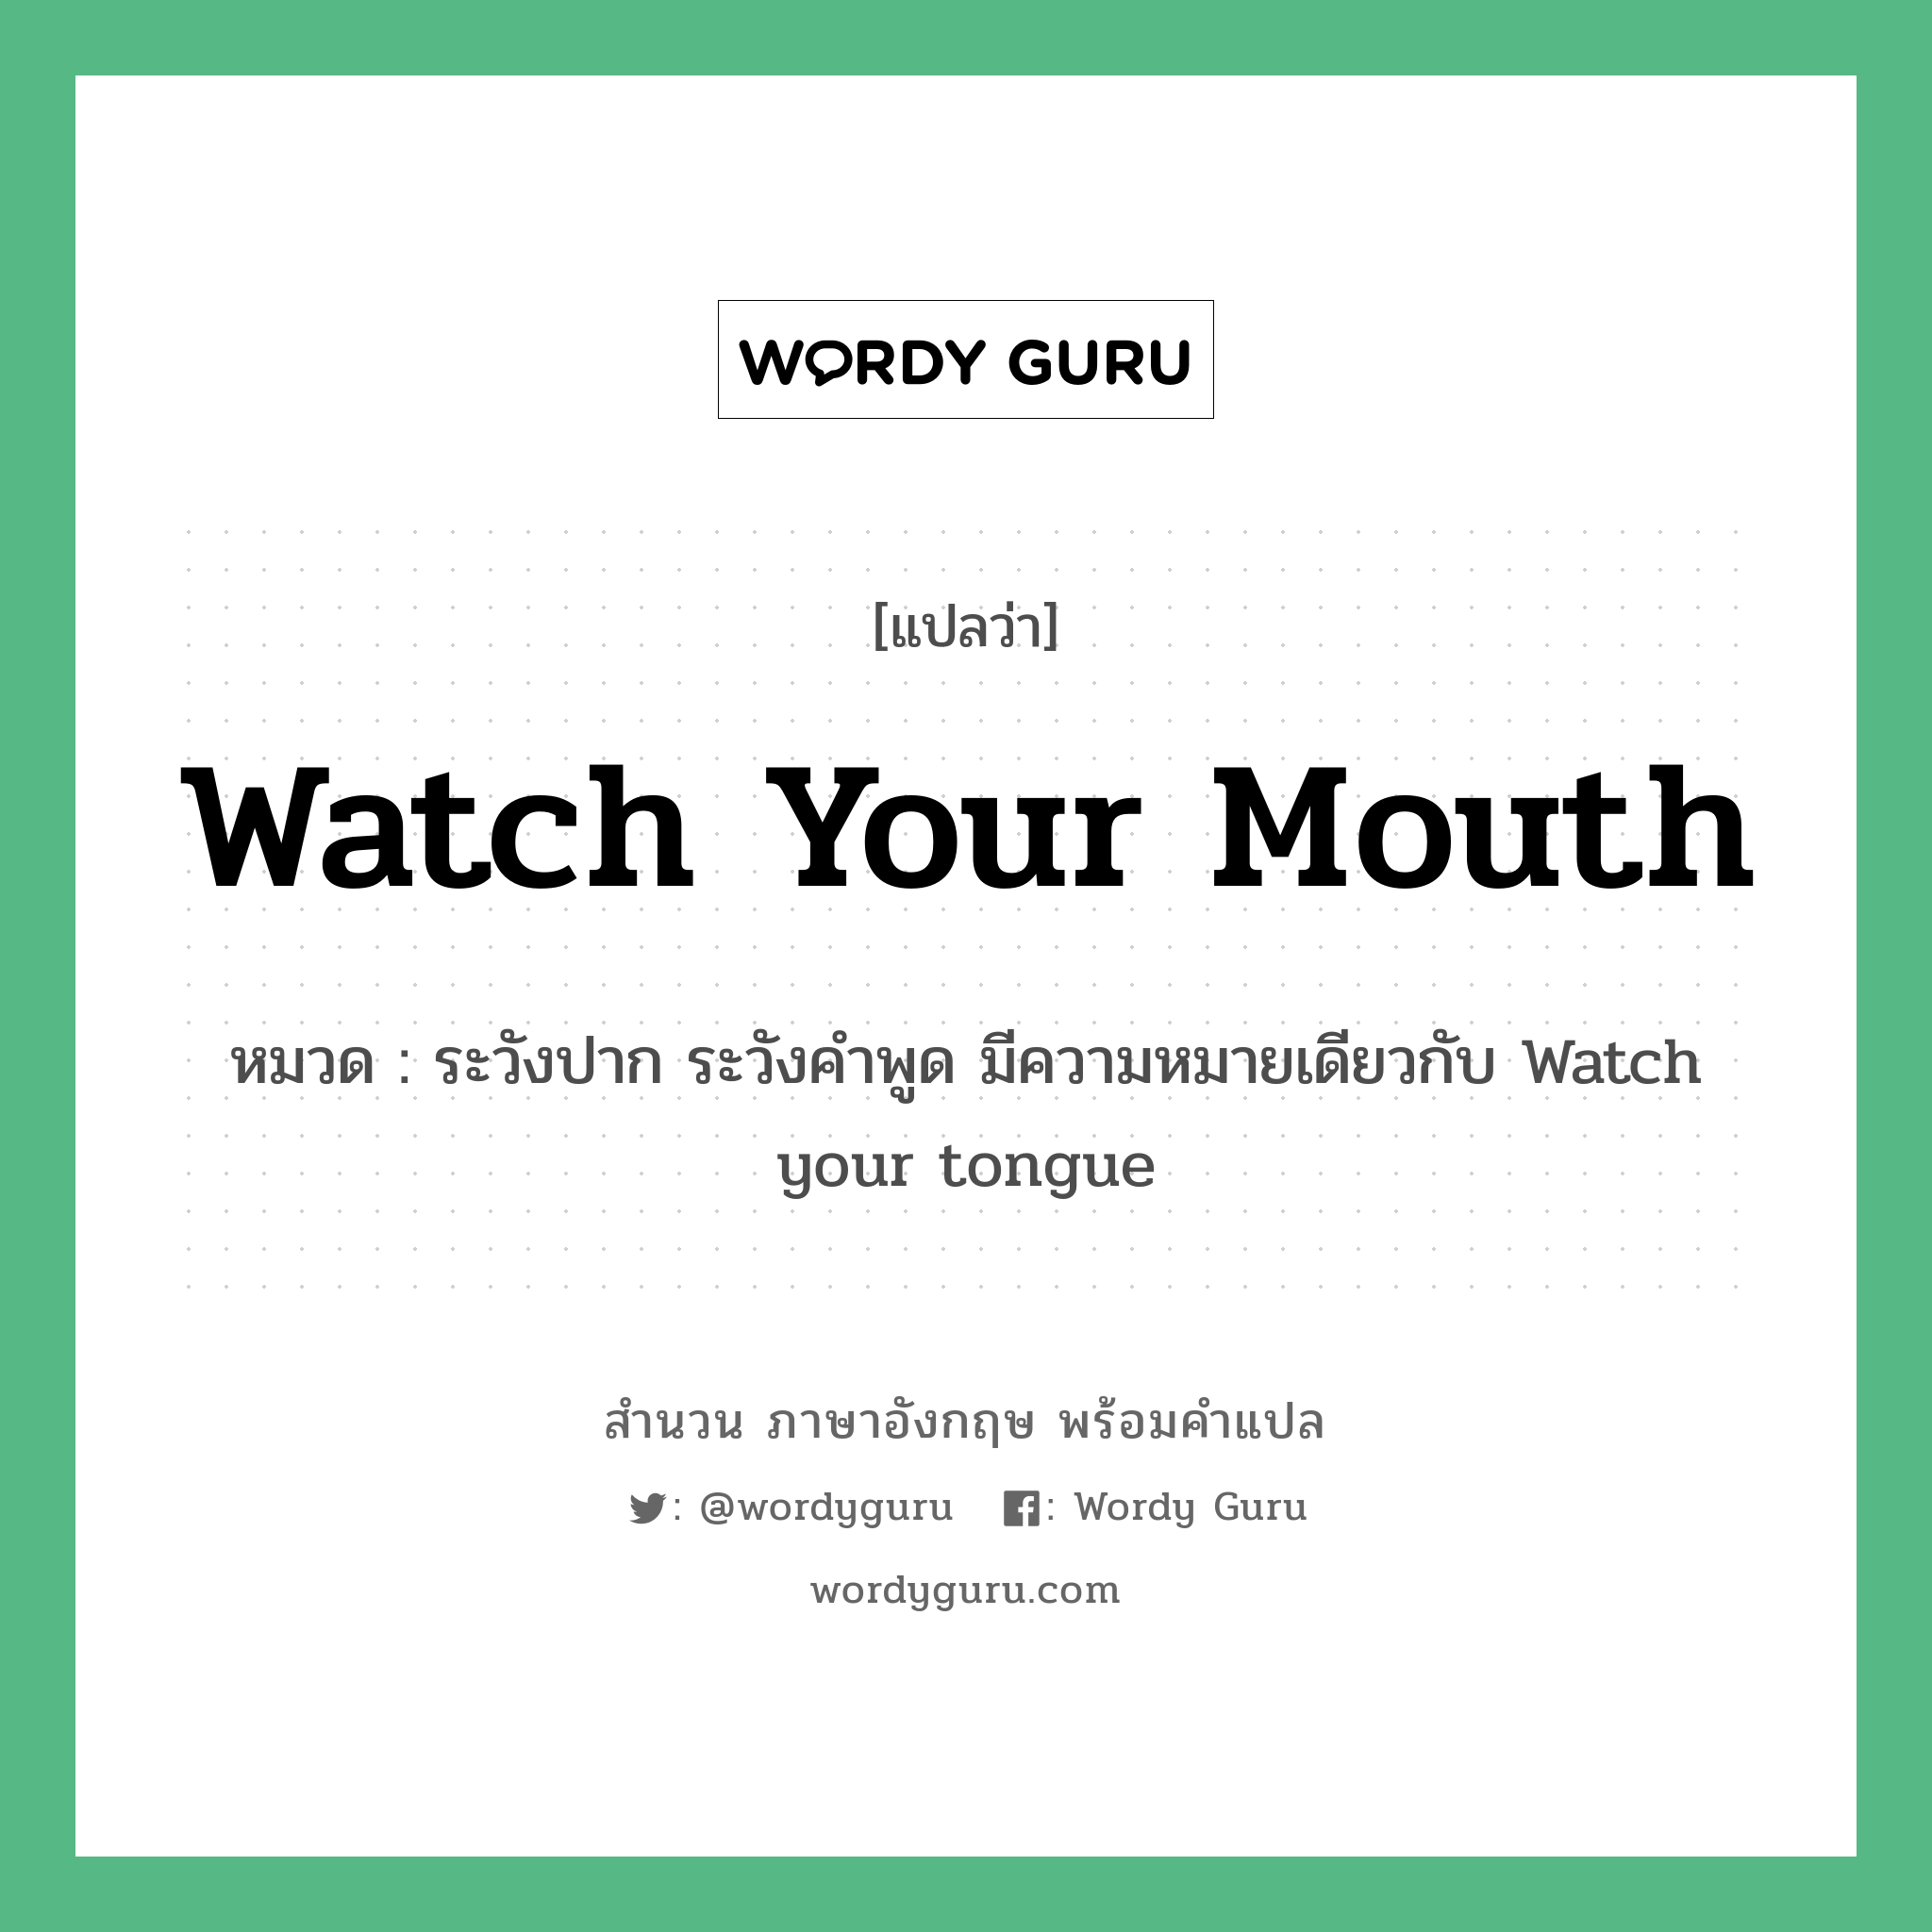 ระวังปาก ระวังคำพูด มีความหมายเดียวกับ Watch your tongue ภาษาอังกฤษ?, สำนวนภาษาอังกฤษ ระวังปาก ระวังคำพูด มีความหมายเดียวกับ Watch your tongue แปลว่า ระวังปาก ระวังคำพูด มีความหมายเดียวกับ Watch your tongue หมวด Watch your mouth